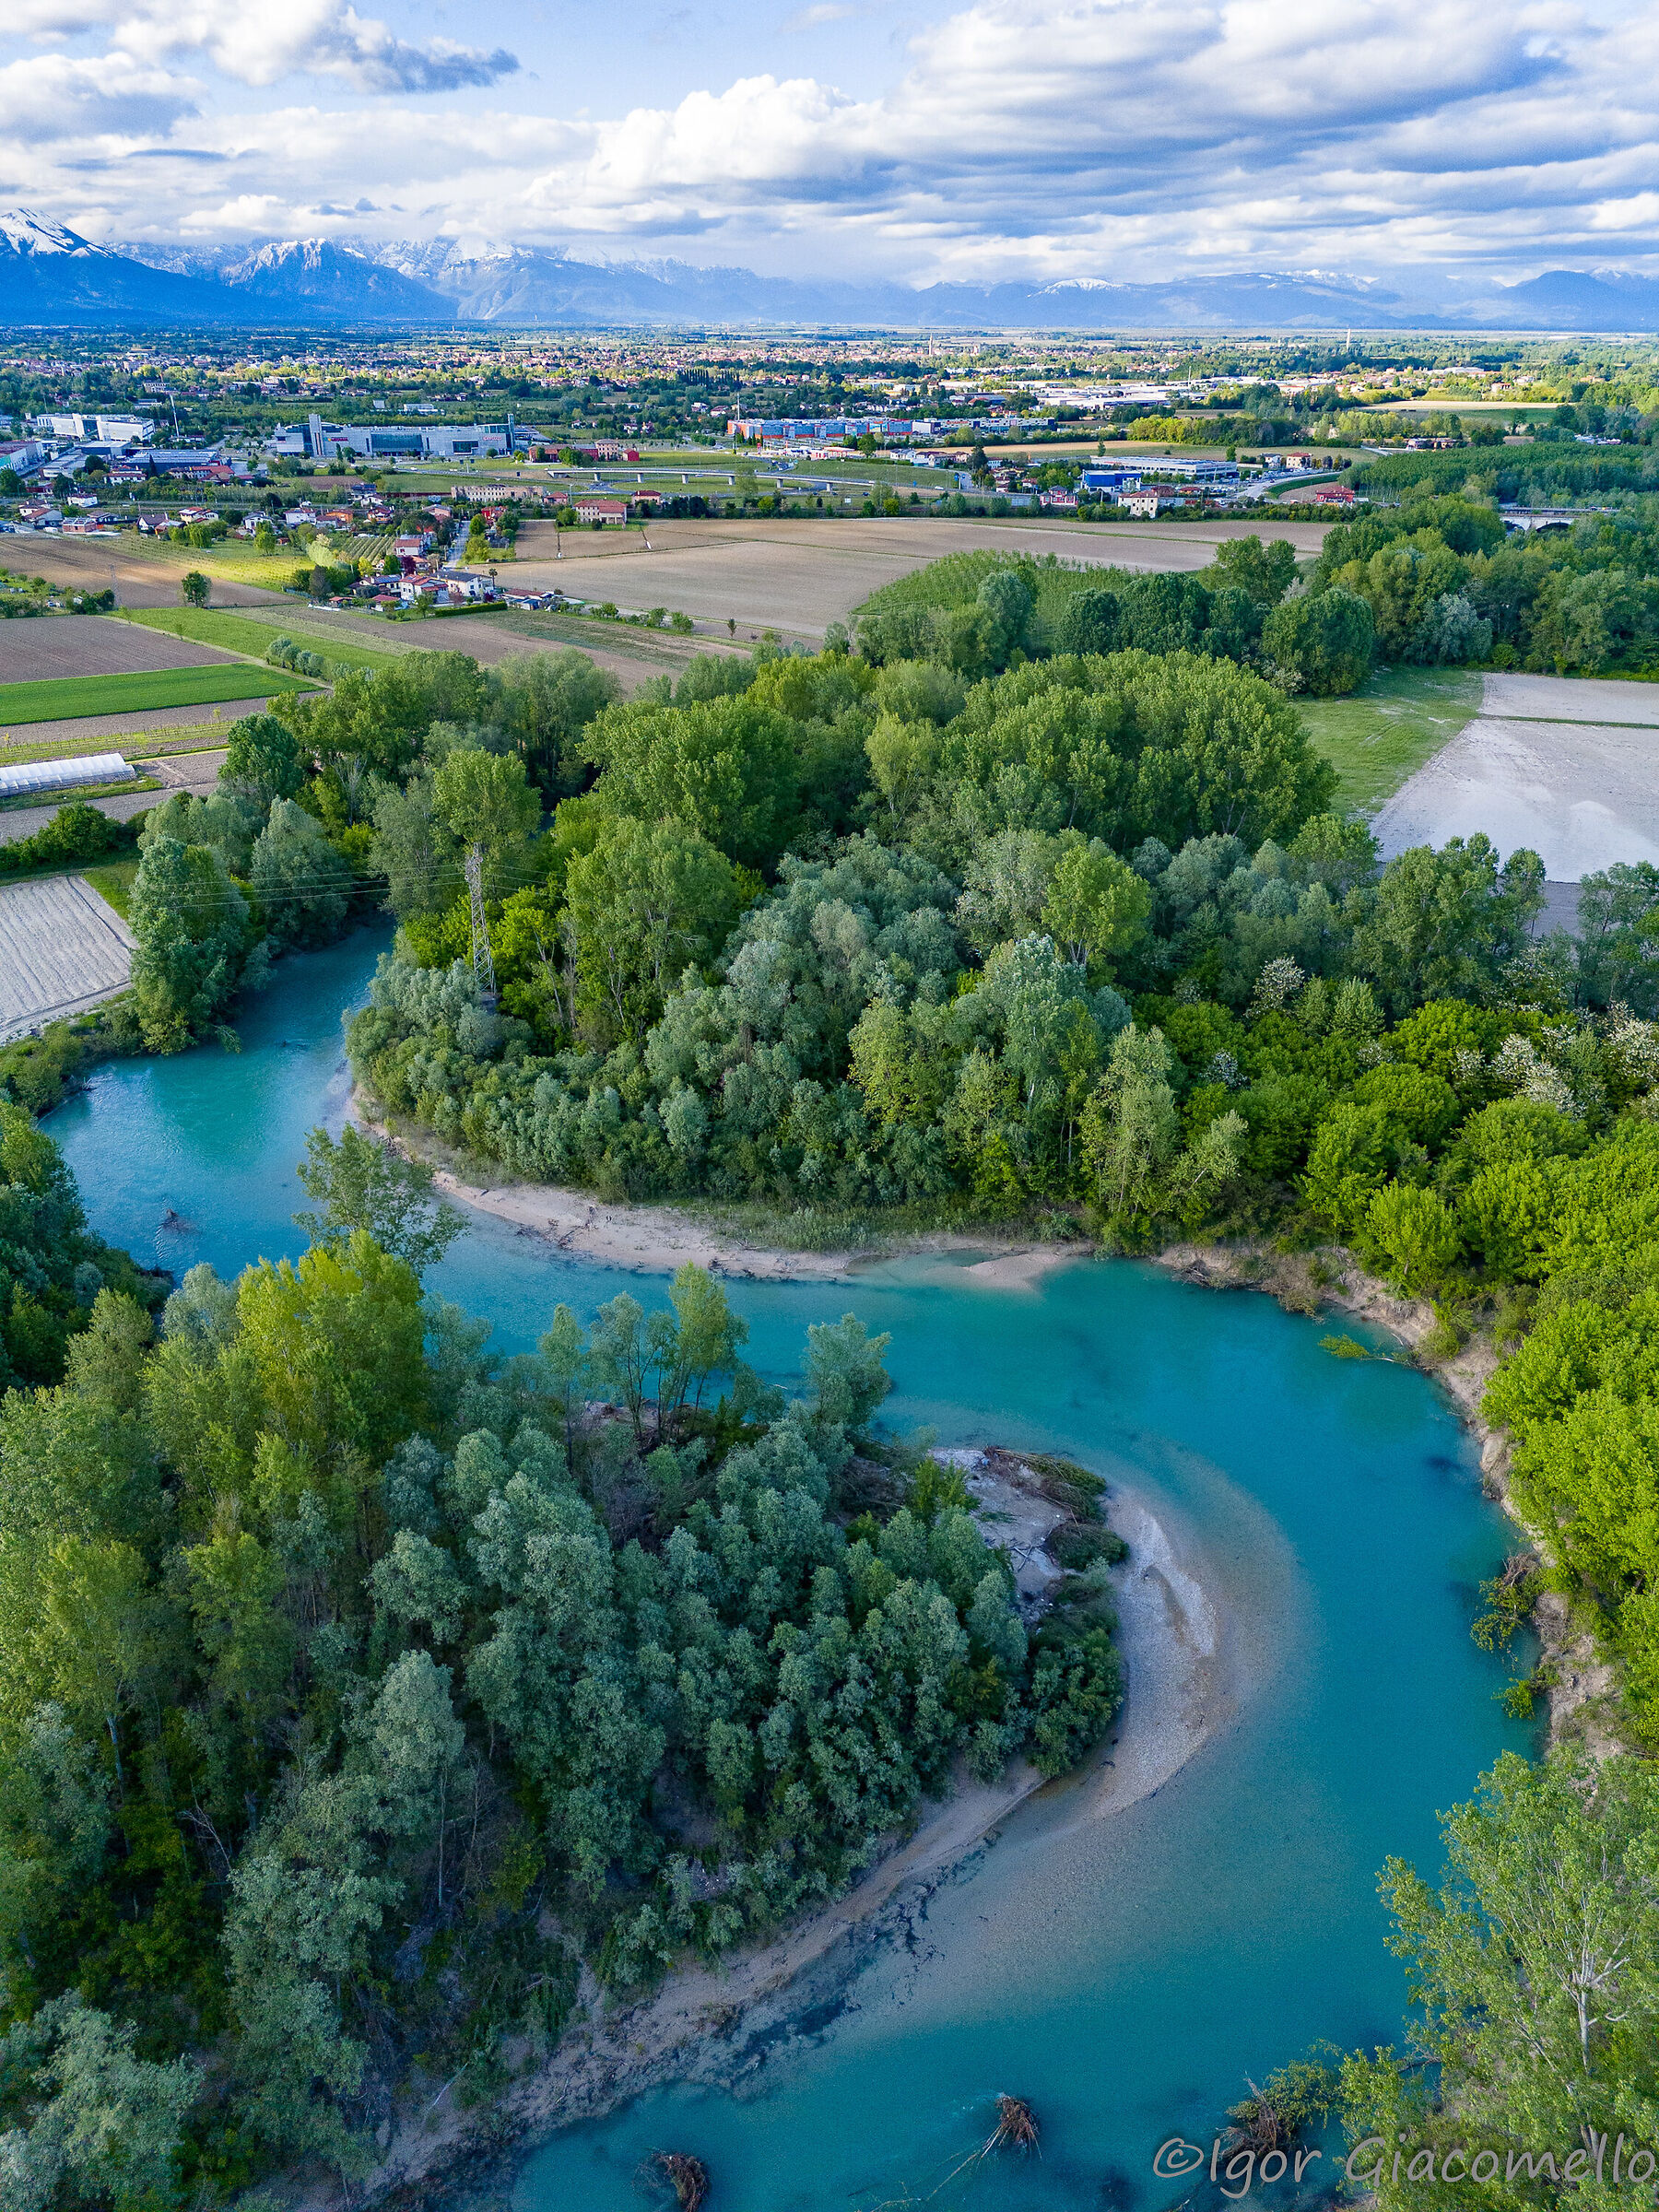 The Meduna River in the Pordenone countryside...